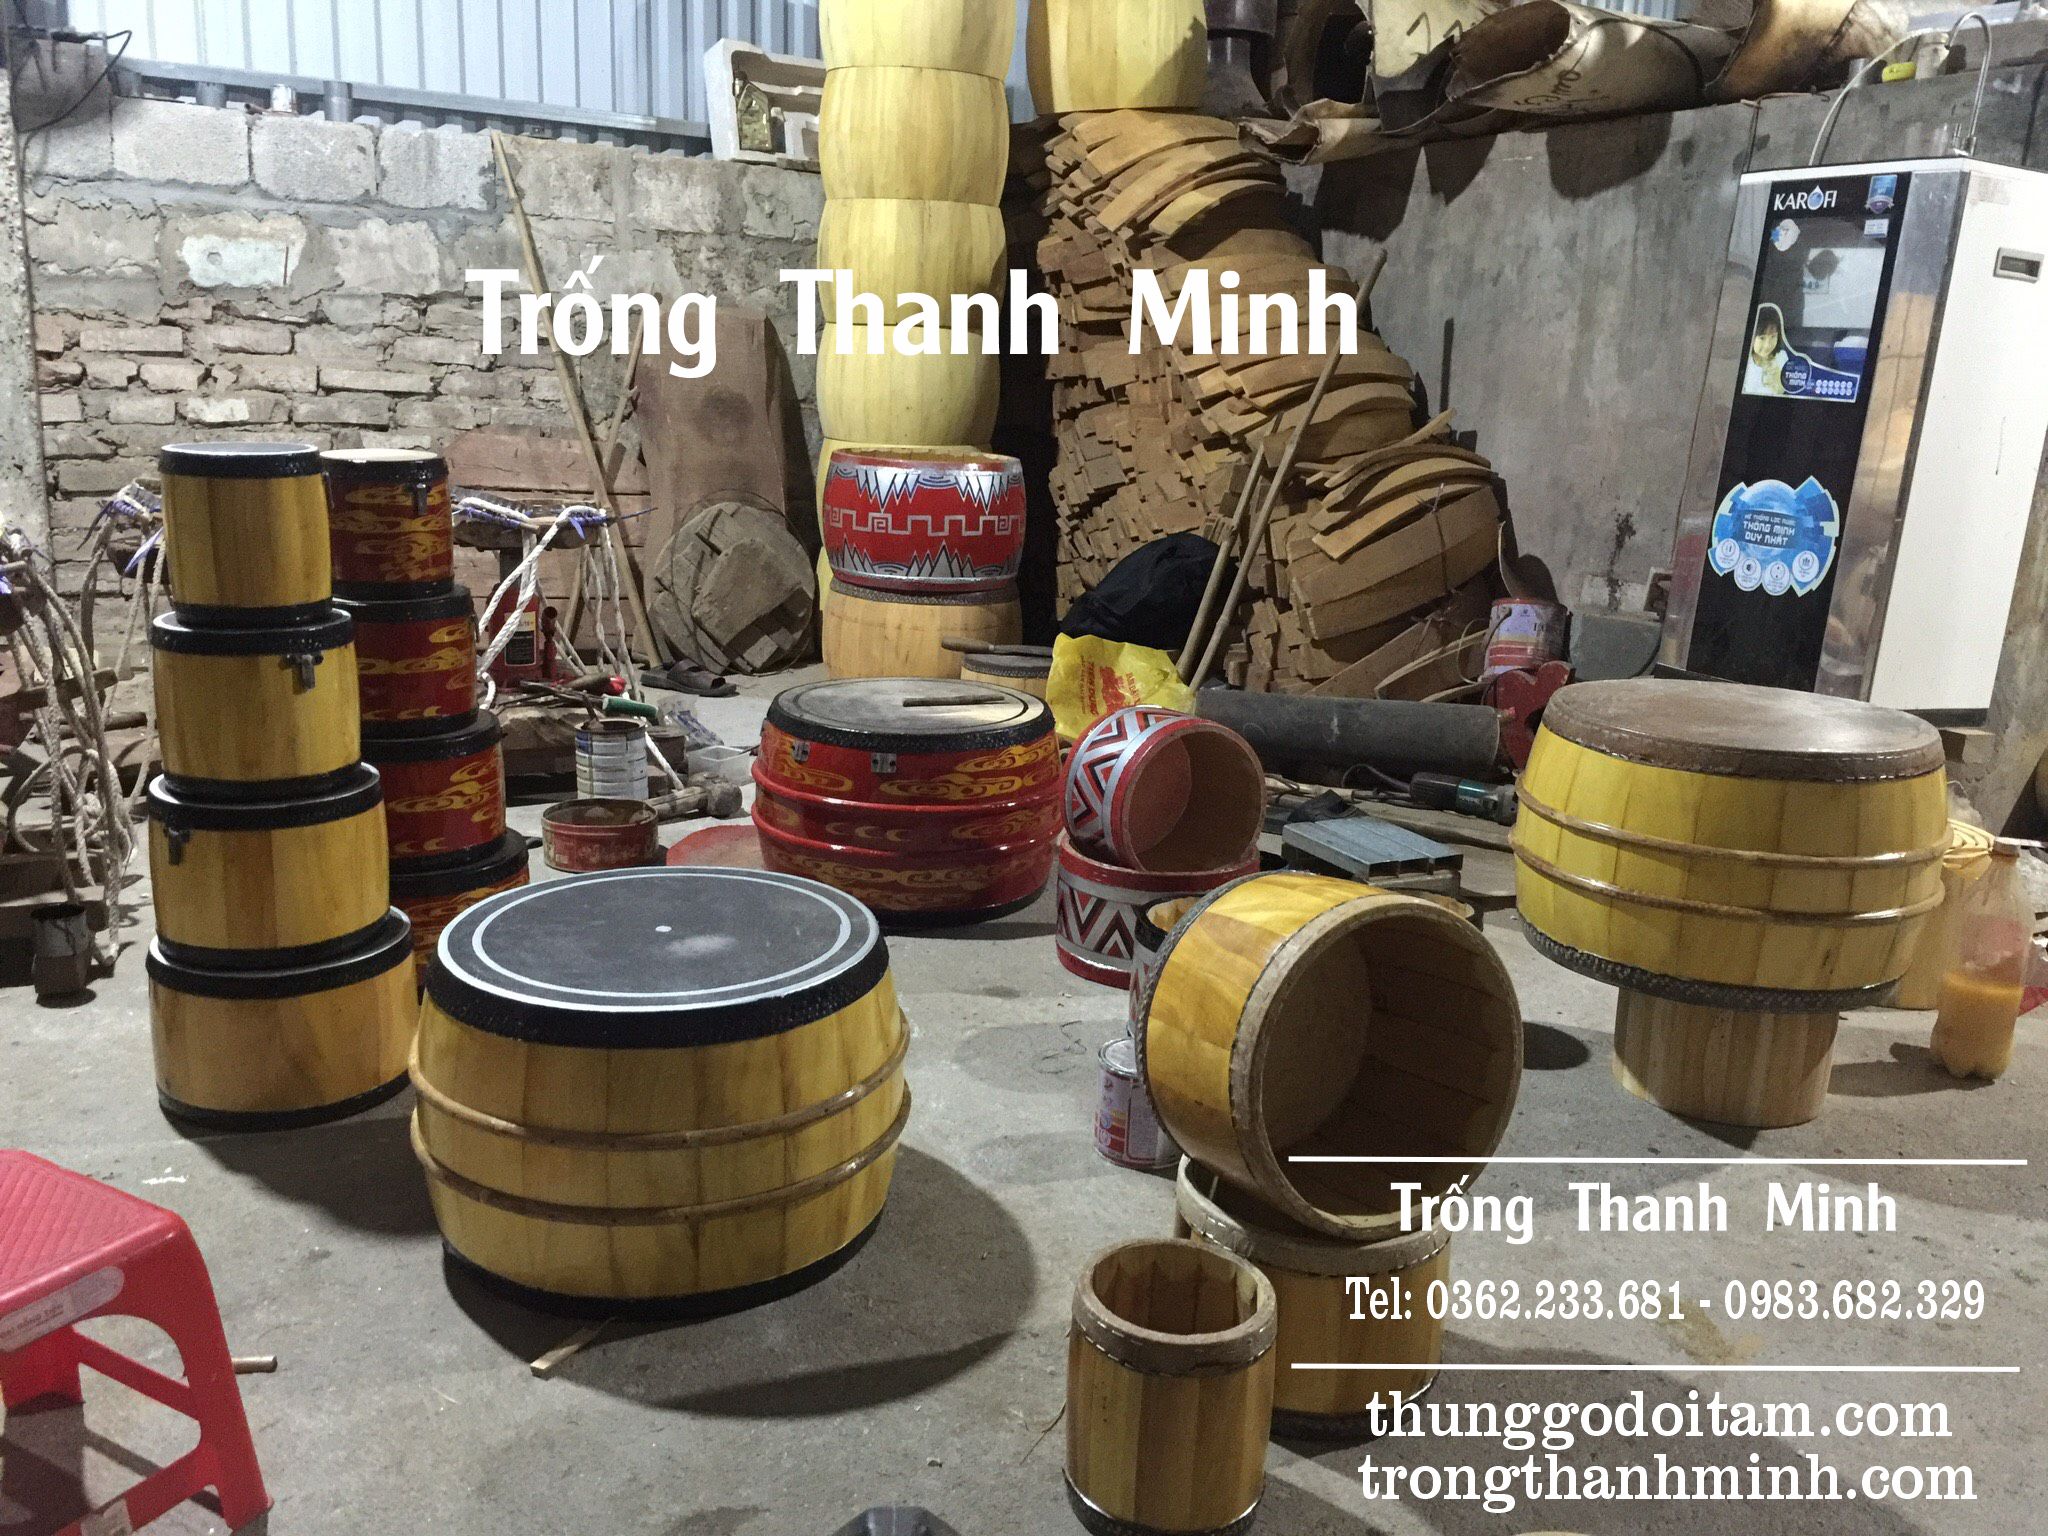 Xưởng sản xuất Trống dàn hát văn tang lõi mít - Trống Thanh Minh số 1 về chất lượng.